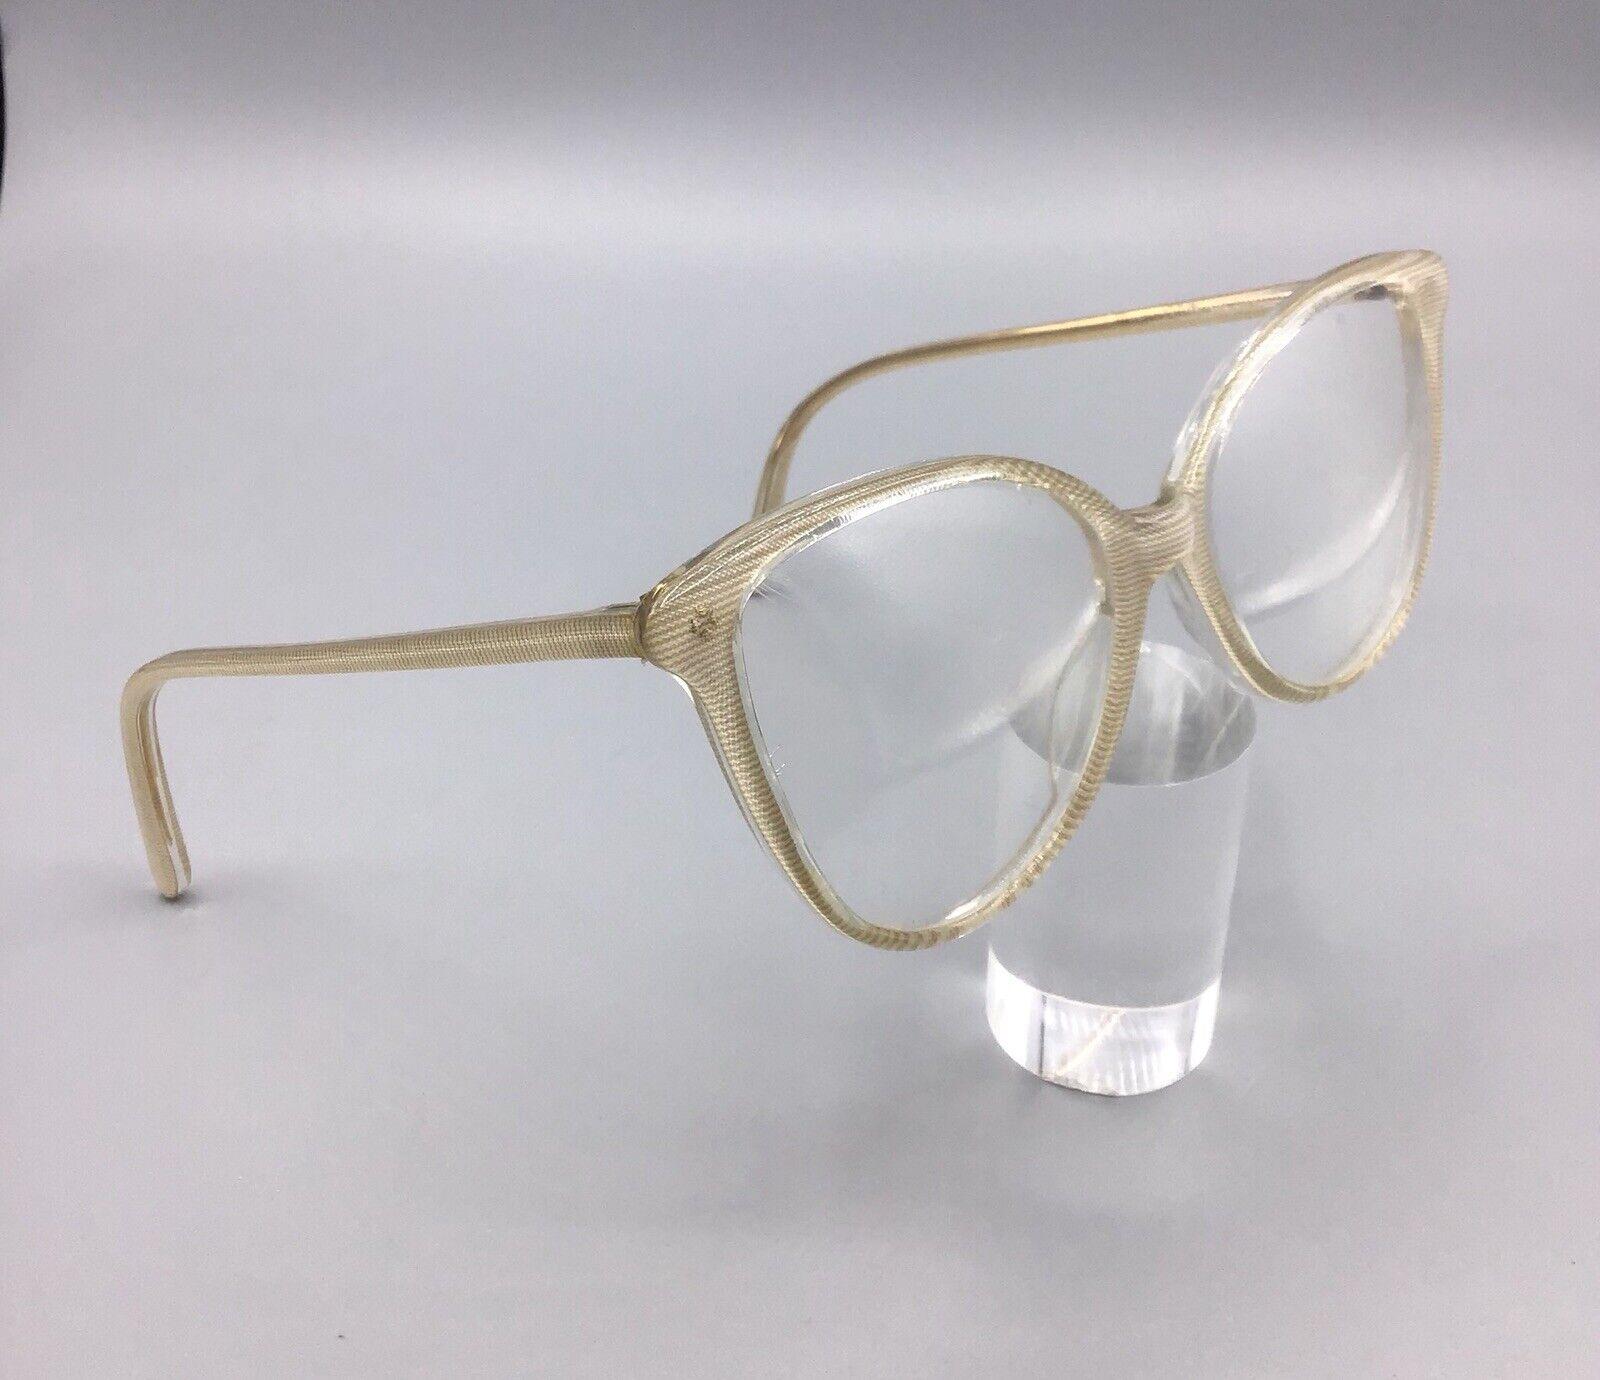 Metalflex Alazer m/152 occhiale vintage eyewear frame brillen lunettes